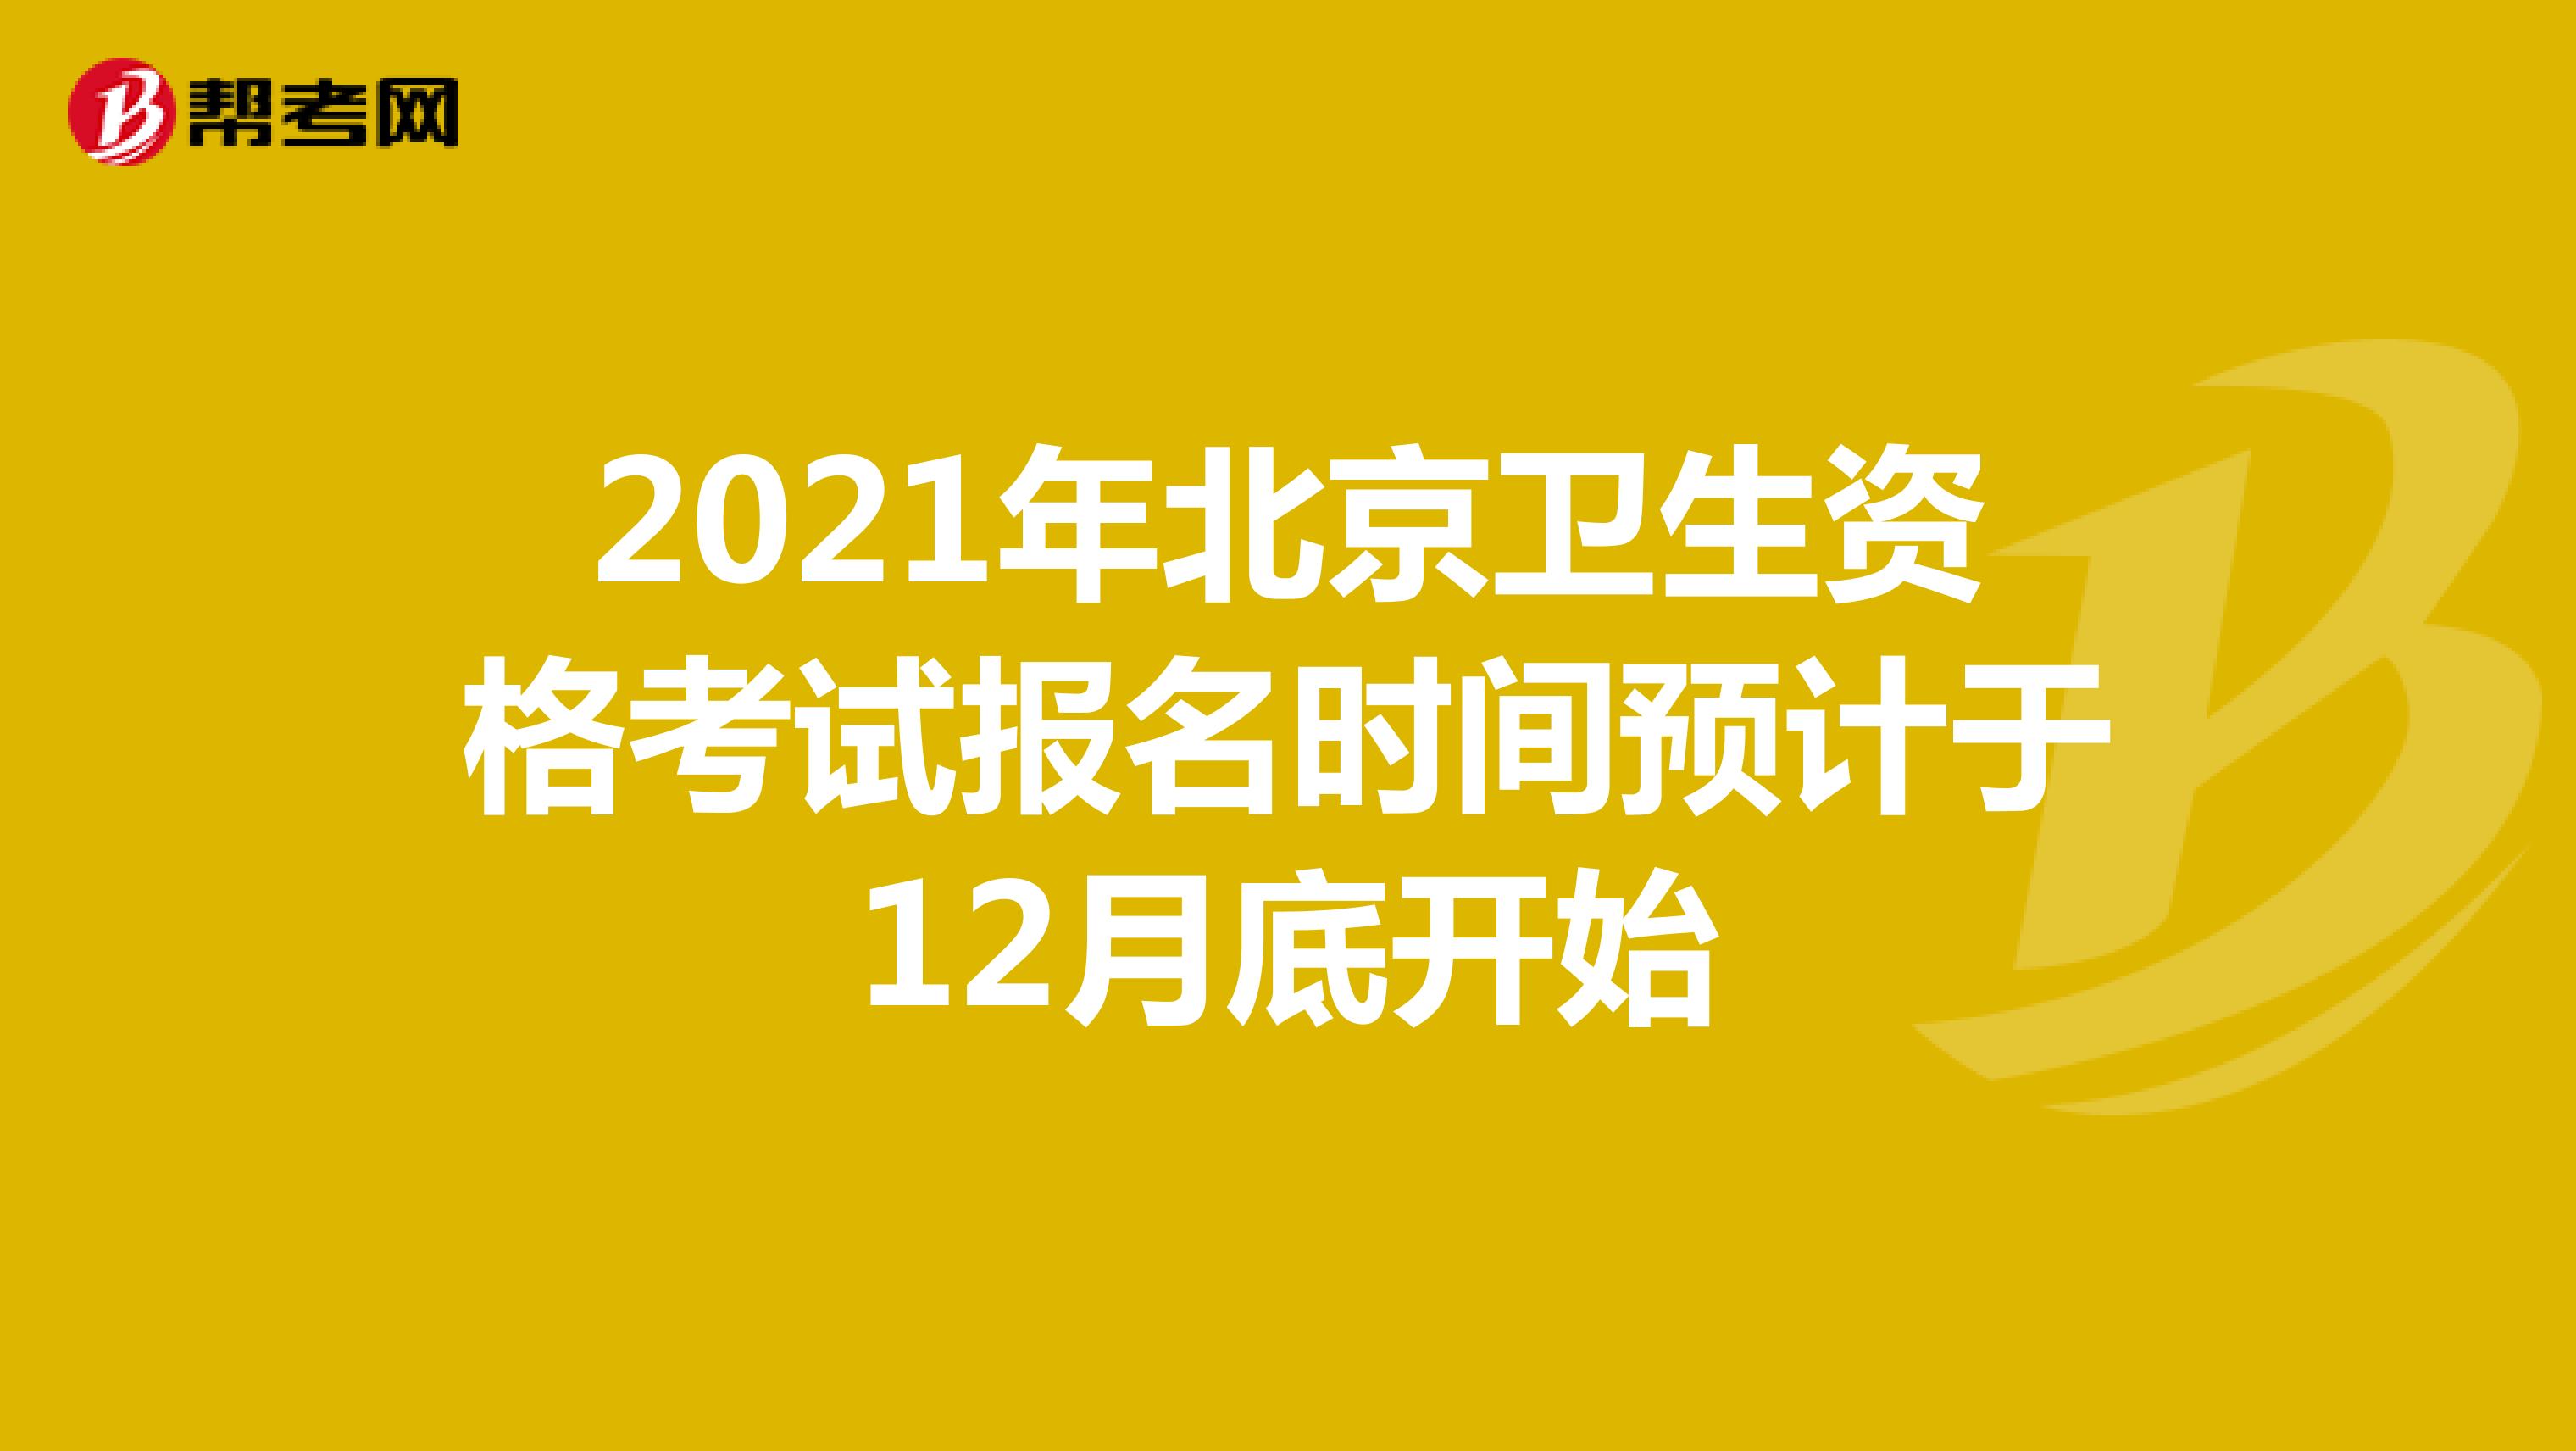 2021年北京卫生资格考试报名时间预计于12月底开始